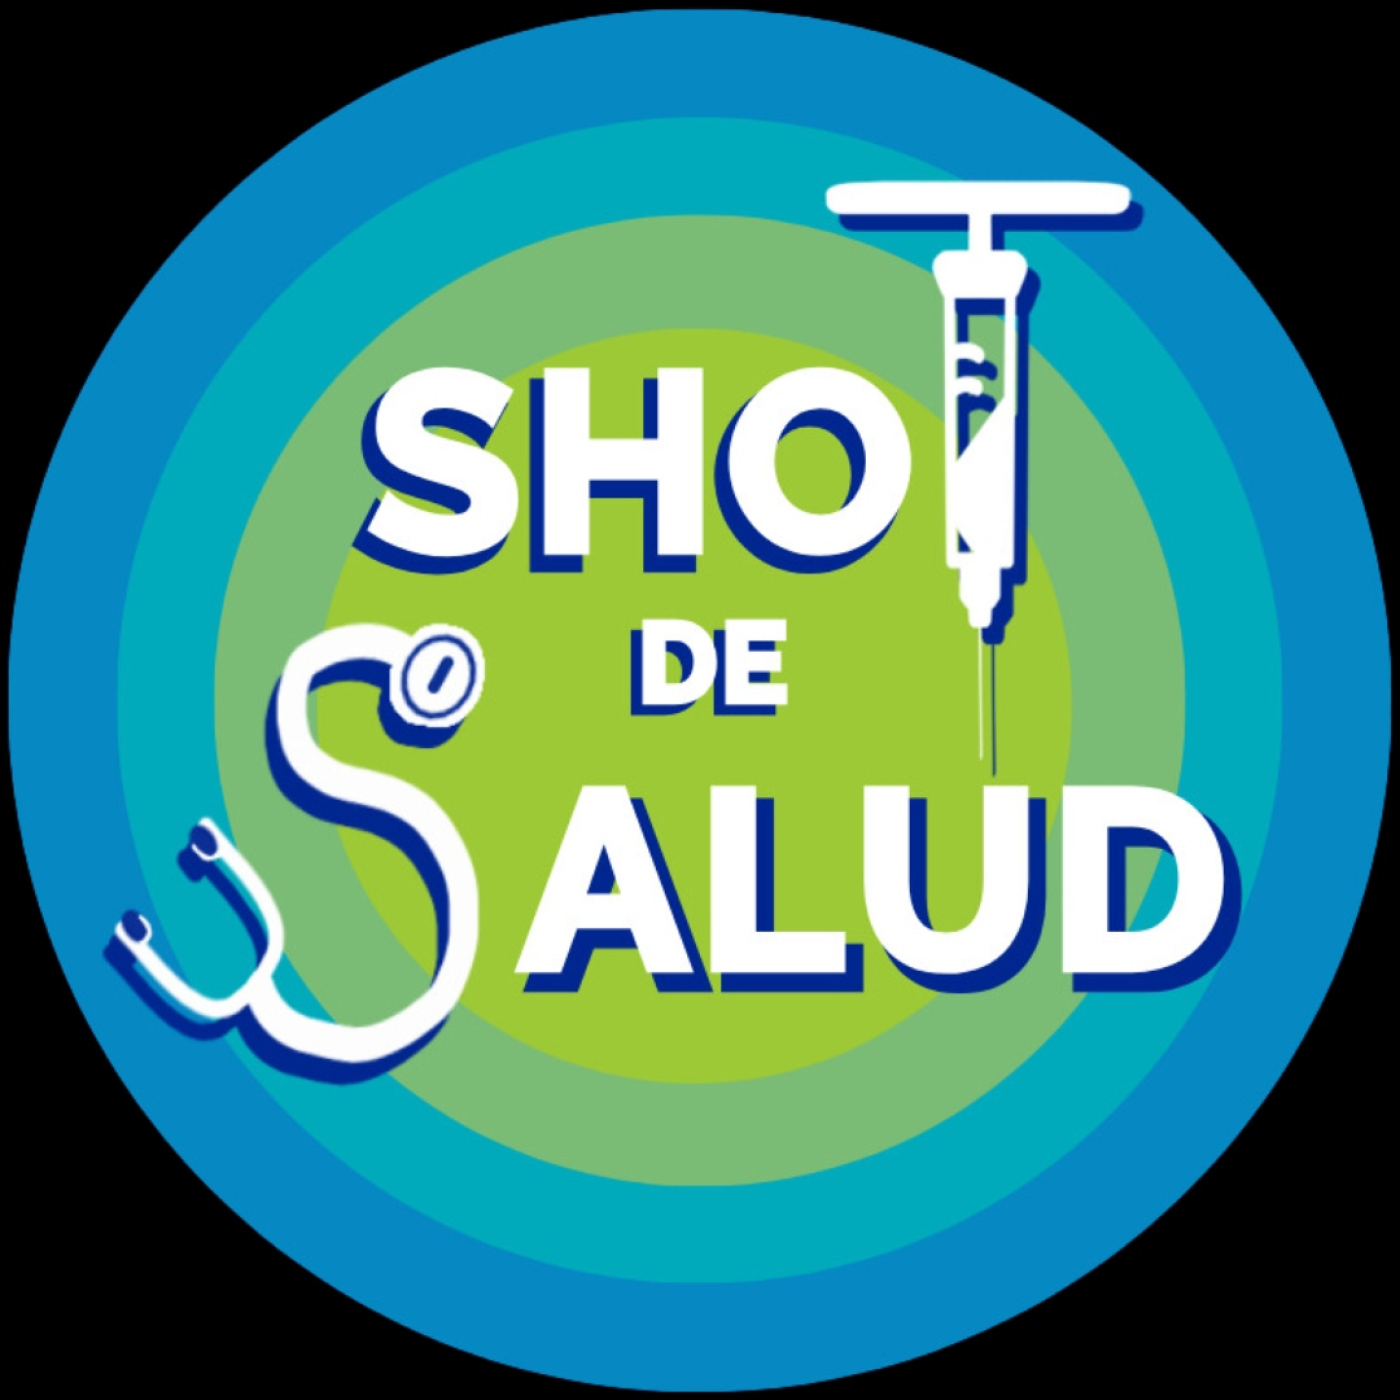 Shot de Salud